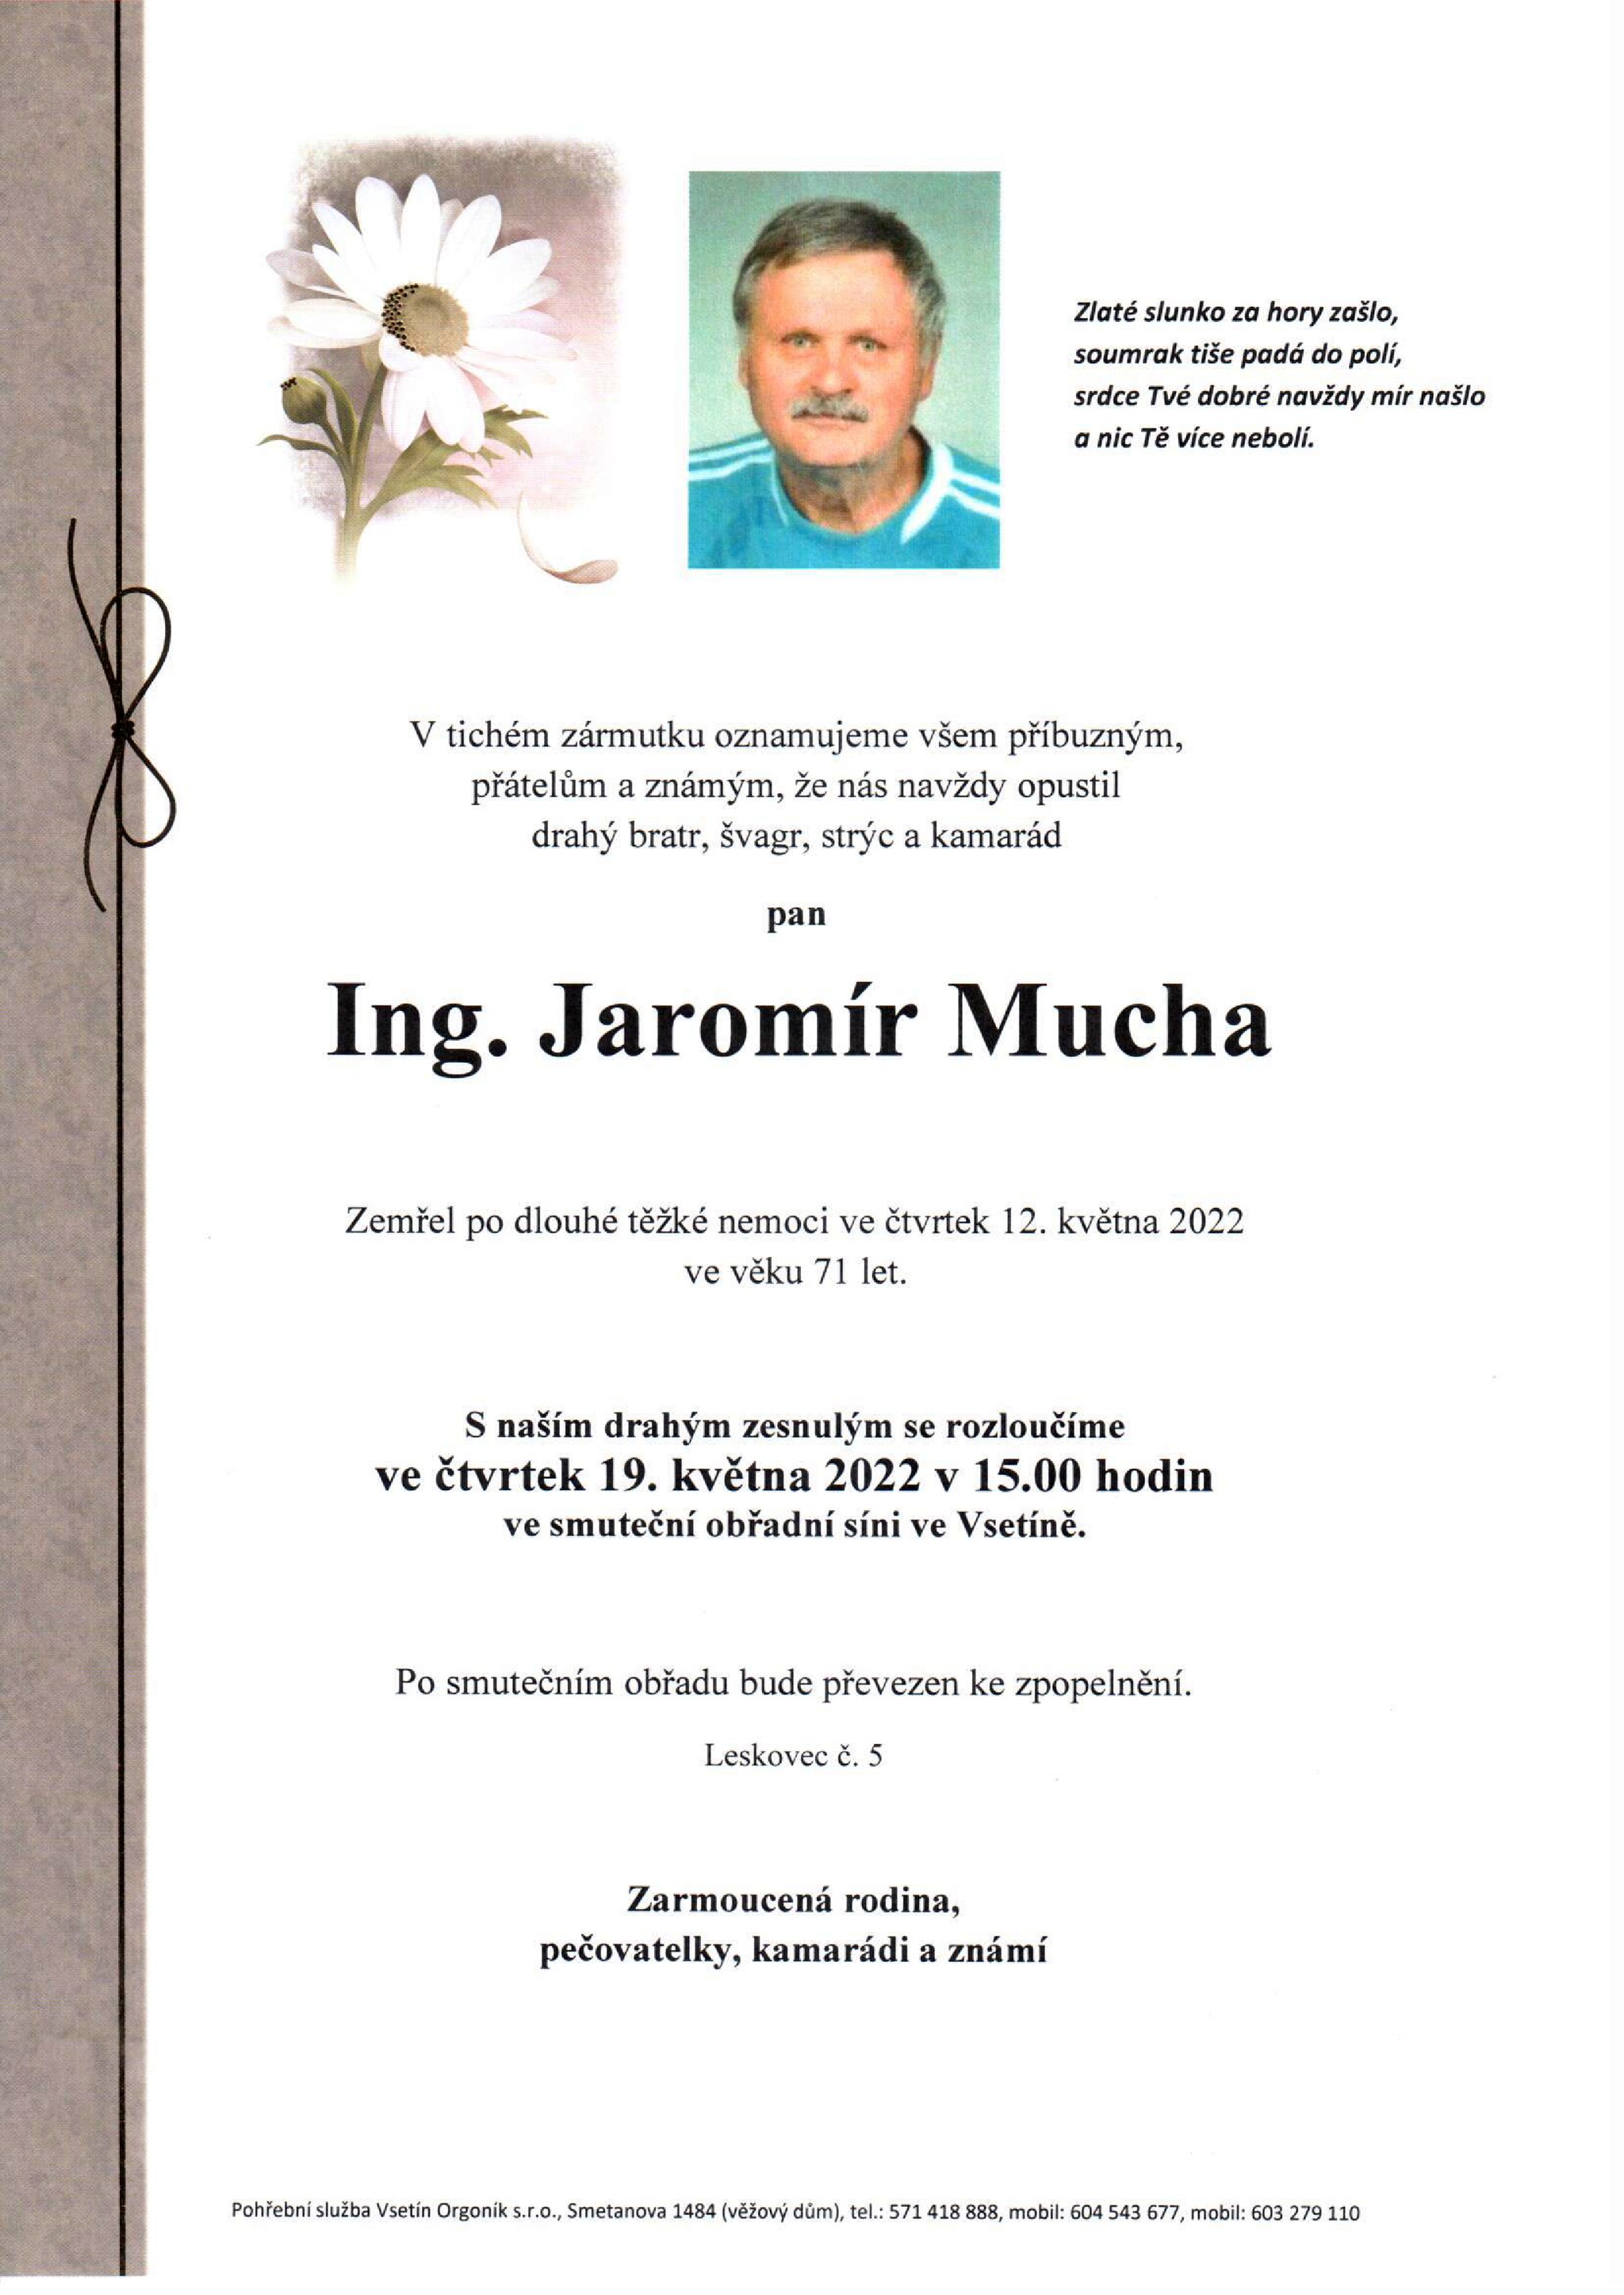 Ing. Jaromír Mucha